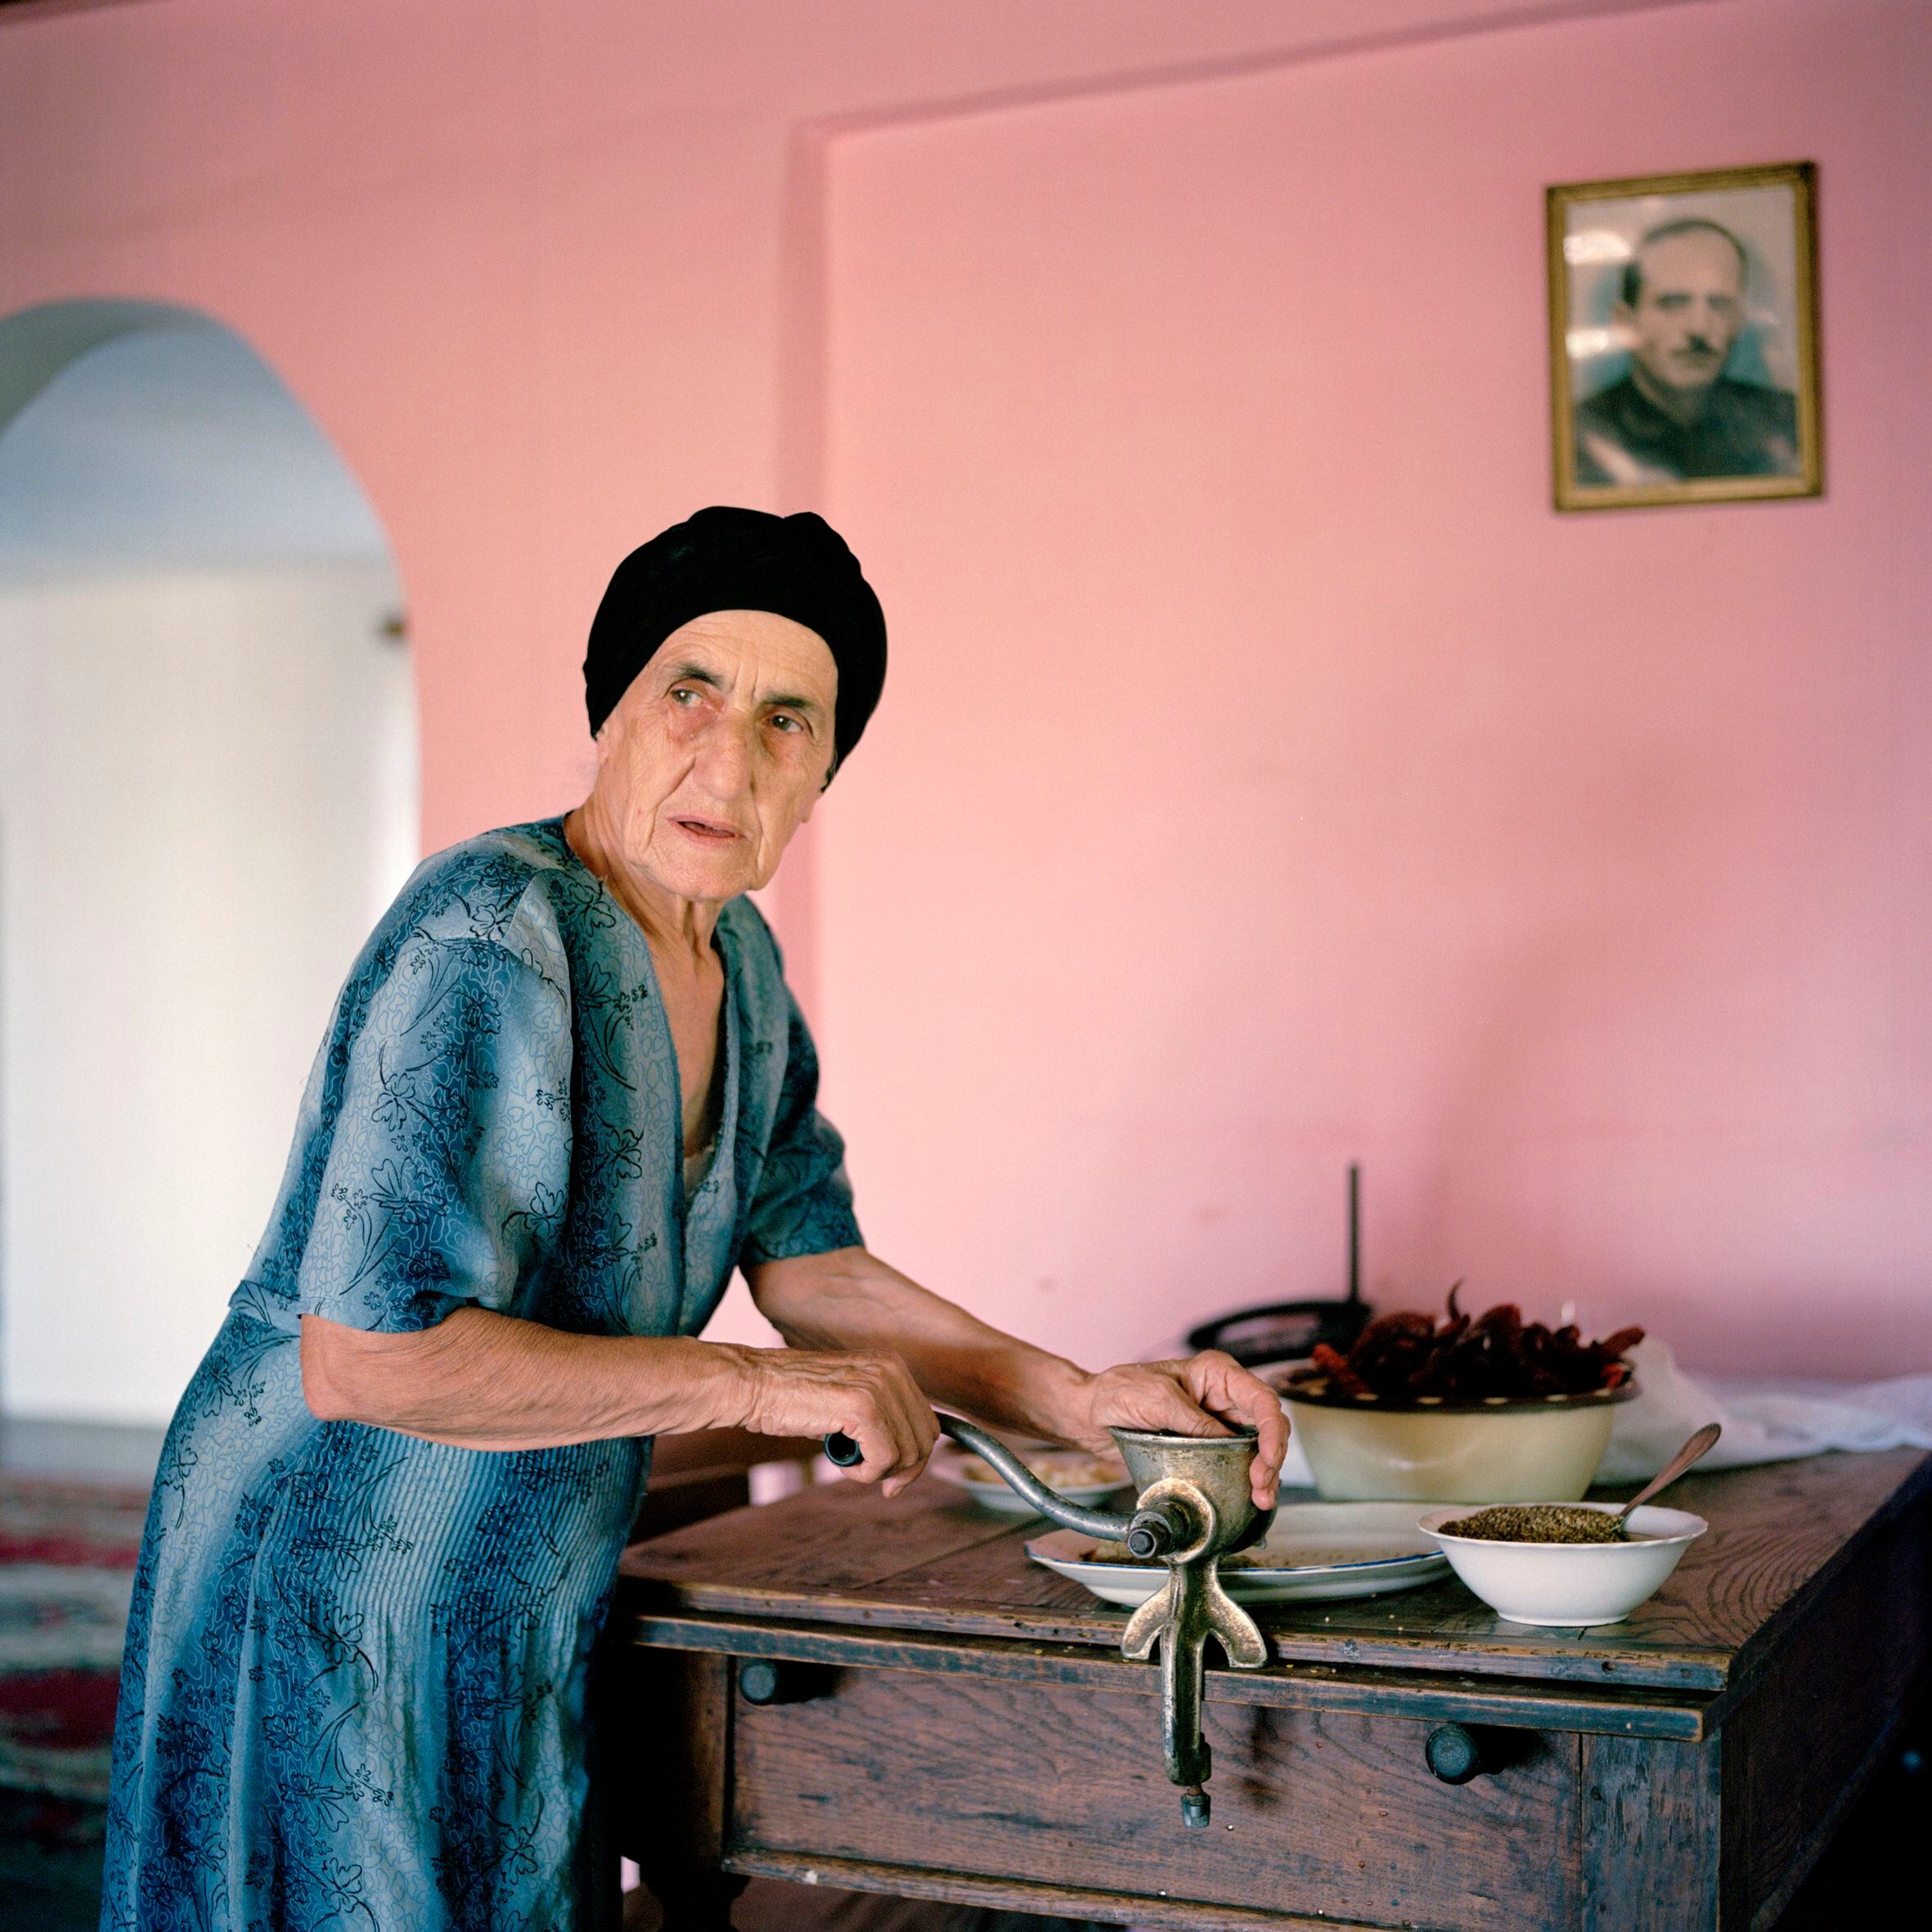 La madre de Tengo Inalishvili cocina una mezcla picante hecha con pimientos en su casa familiar en Rechxi. Rechxi, Abjasia, 2010. De la serie 'Returning Home – Croatia'. 